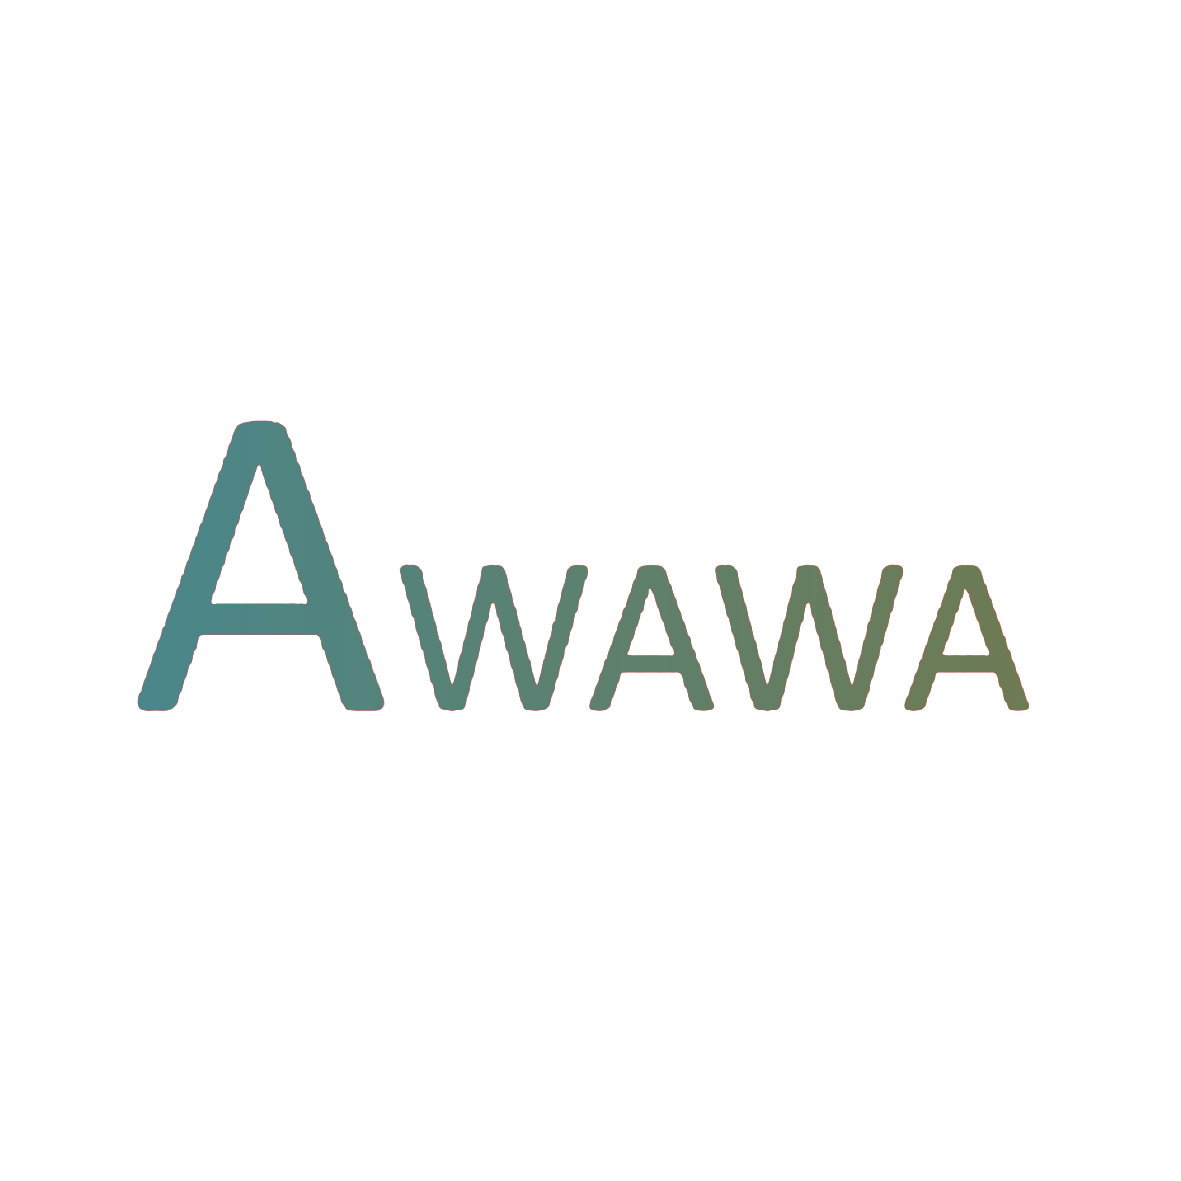 AWAWA